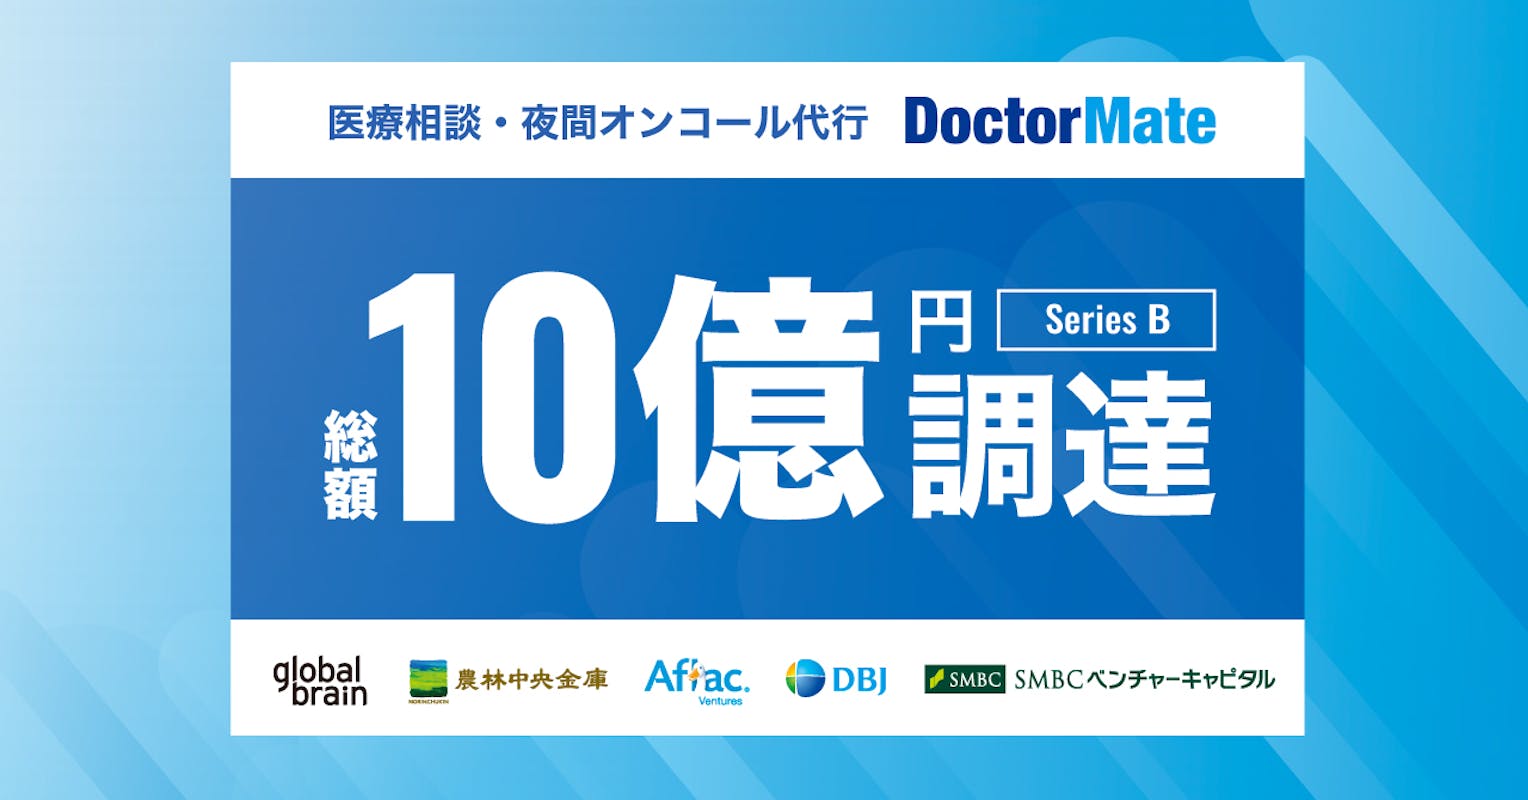 日本初の介護×オンライン診療を展開する「ドクターメイト」が10億円を調達、更なる加速に向けエンジニアの採用強化